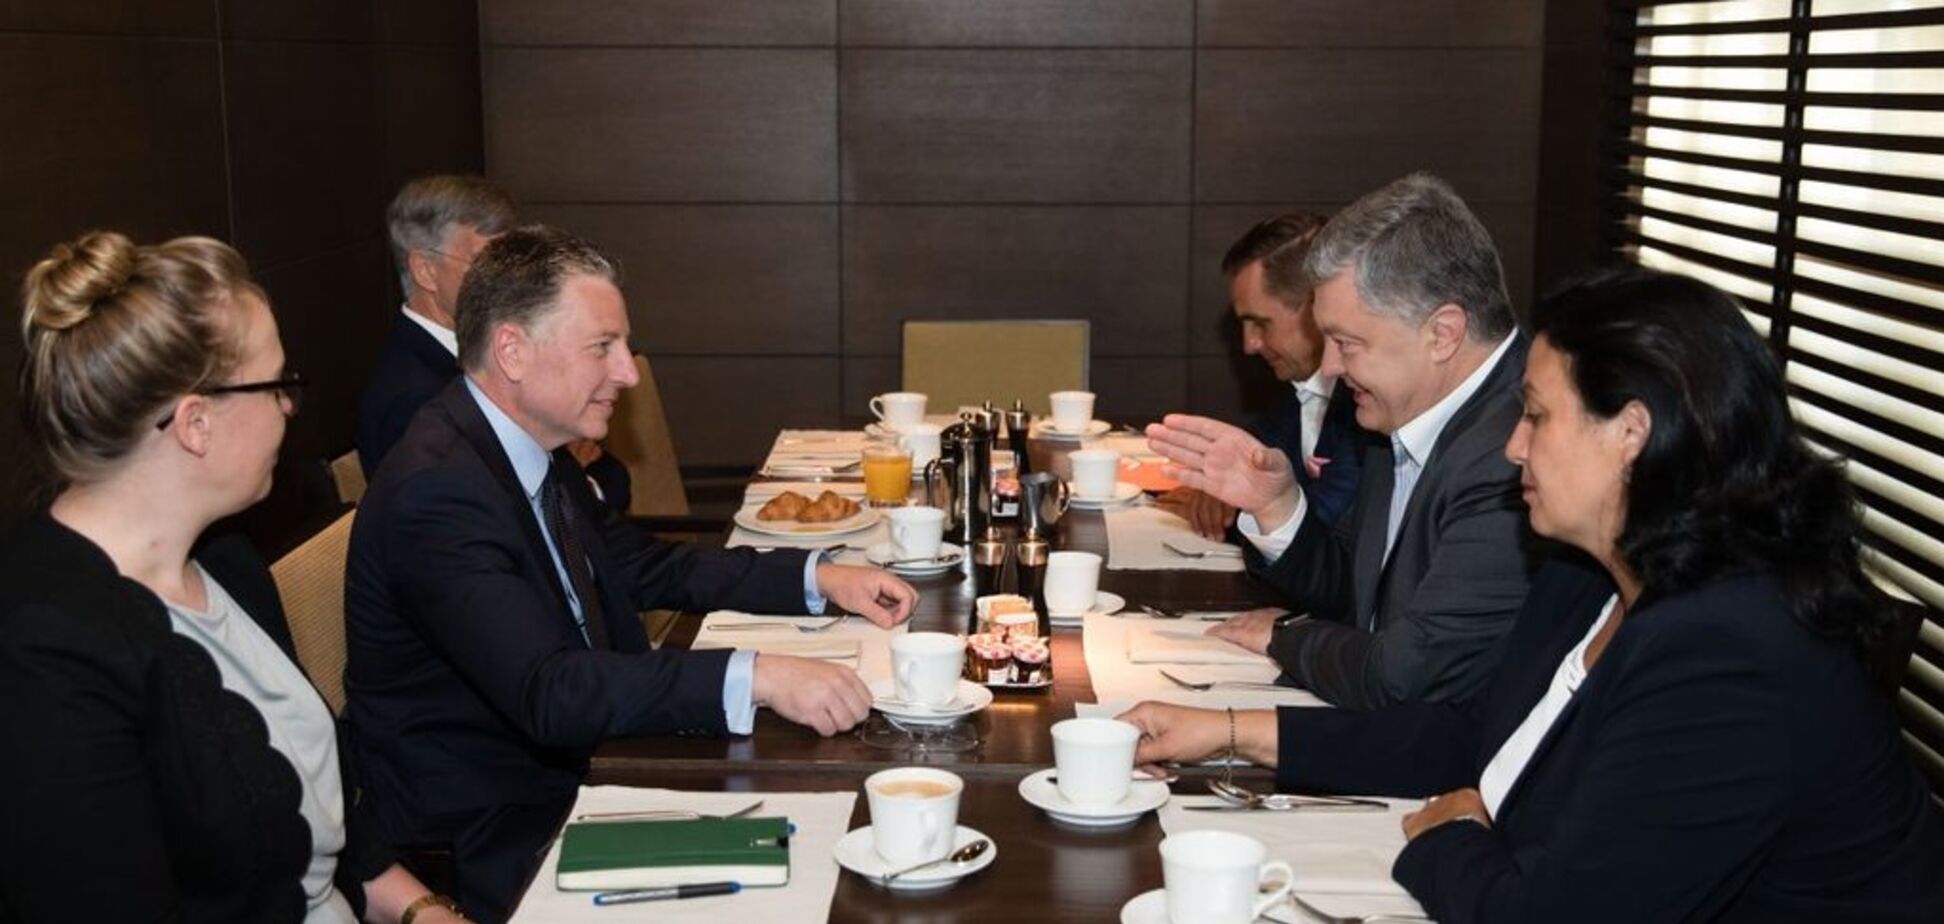 Встреча Порошенко с Волкером: разговоры о приглашении РФ в G7 преждевременные и ложные